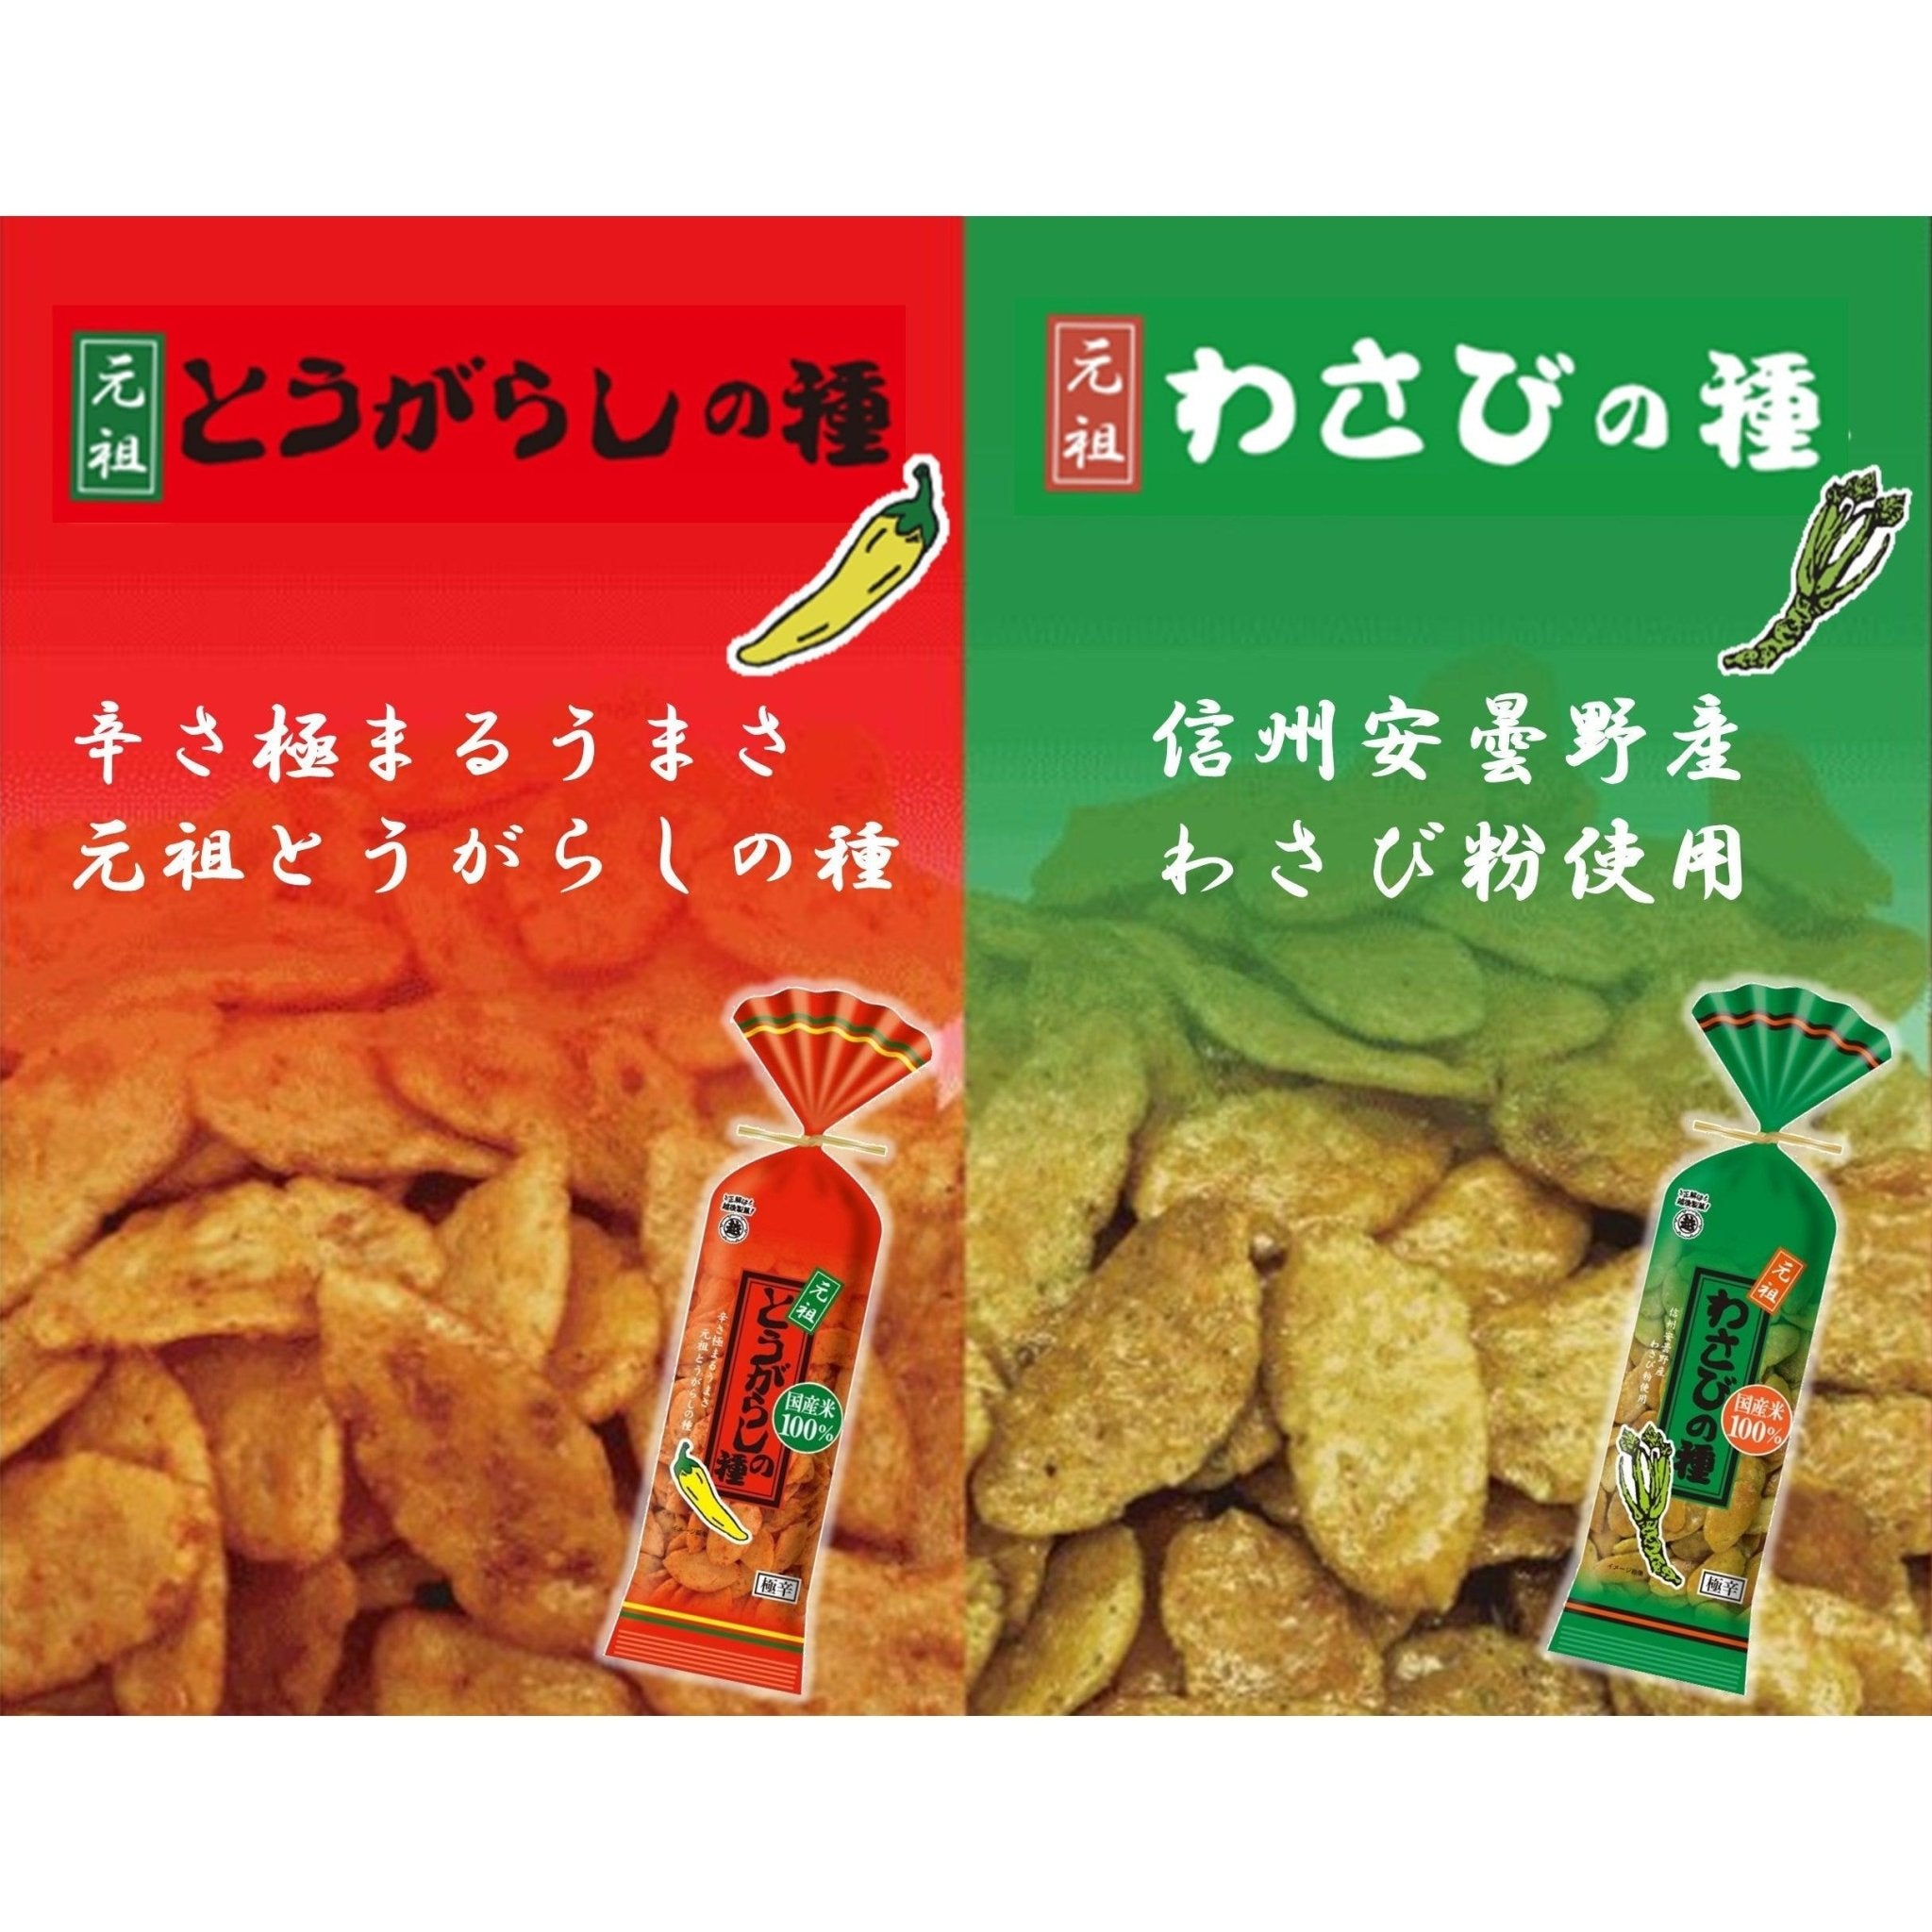 Echigo Seika Togarashi no Tane Spicy Hot Rice Crackers 80g (Pack of 5)